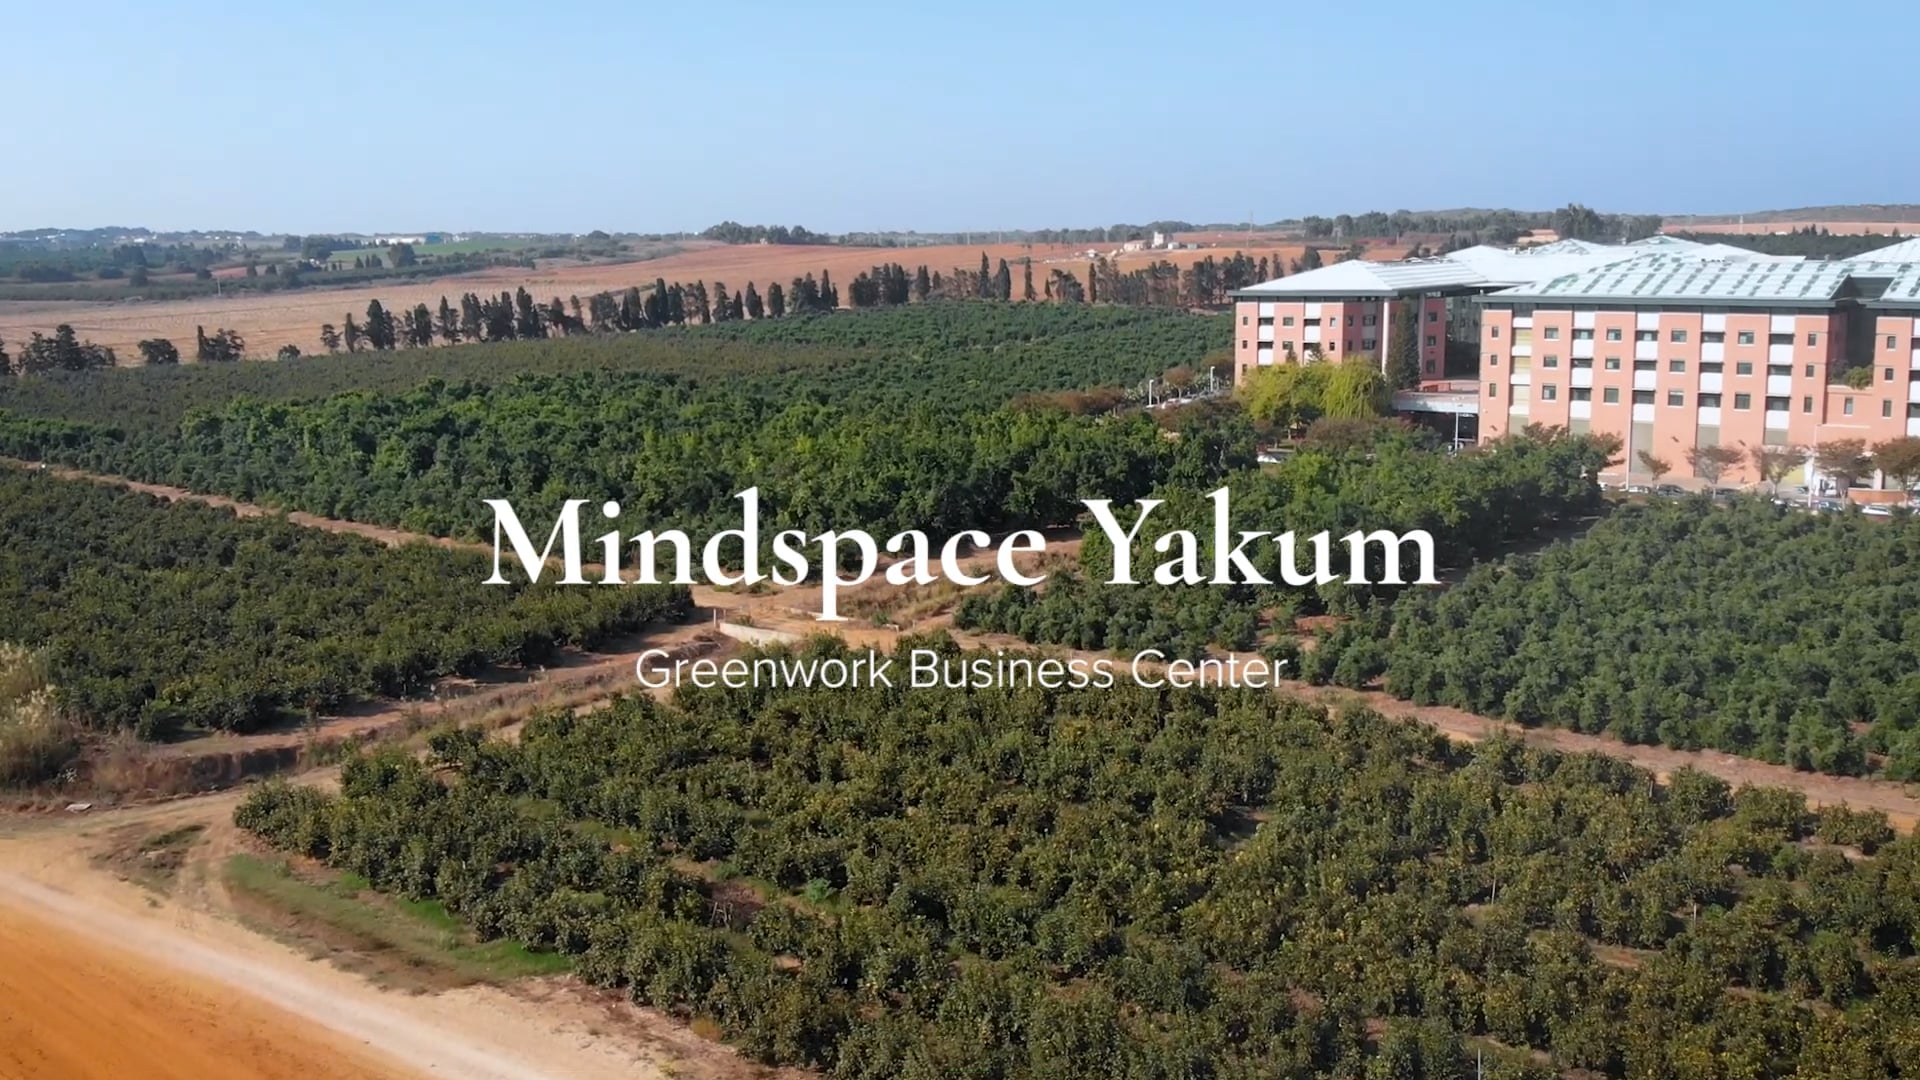 Mindspace Yakum